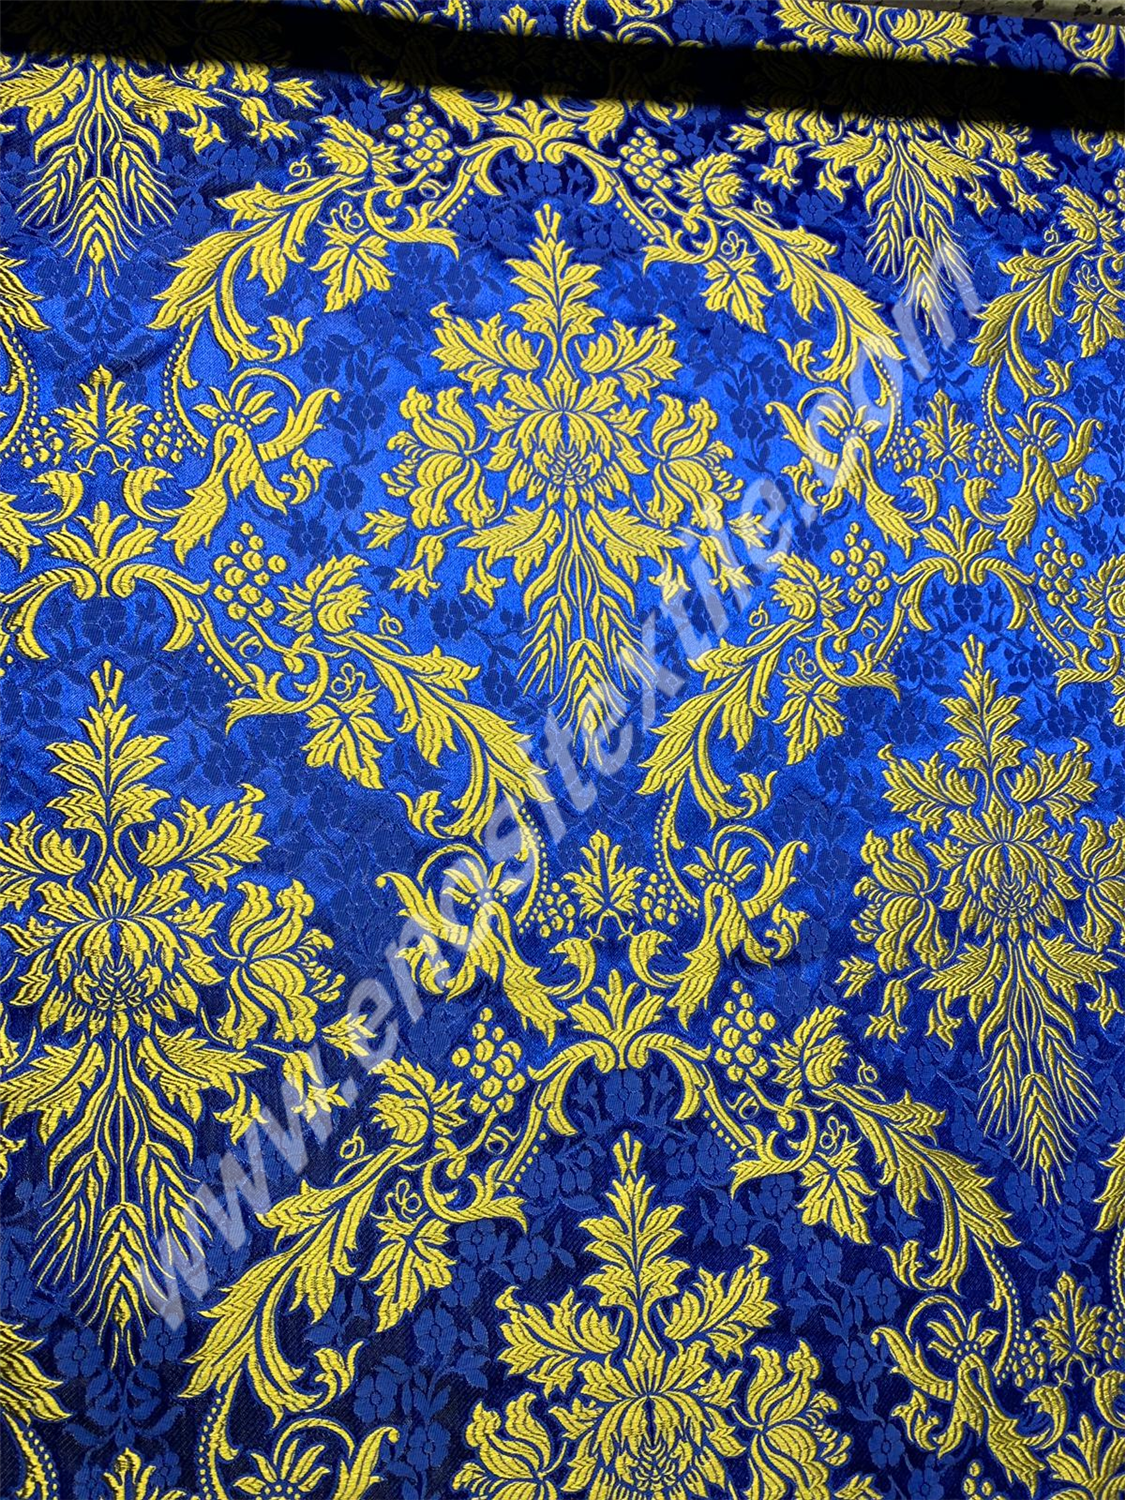 KL-079 Dark Blue-Gold Brocade Fabrics